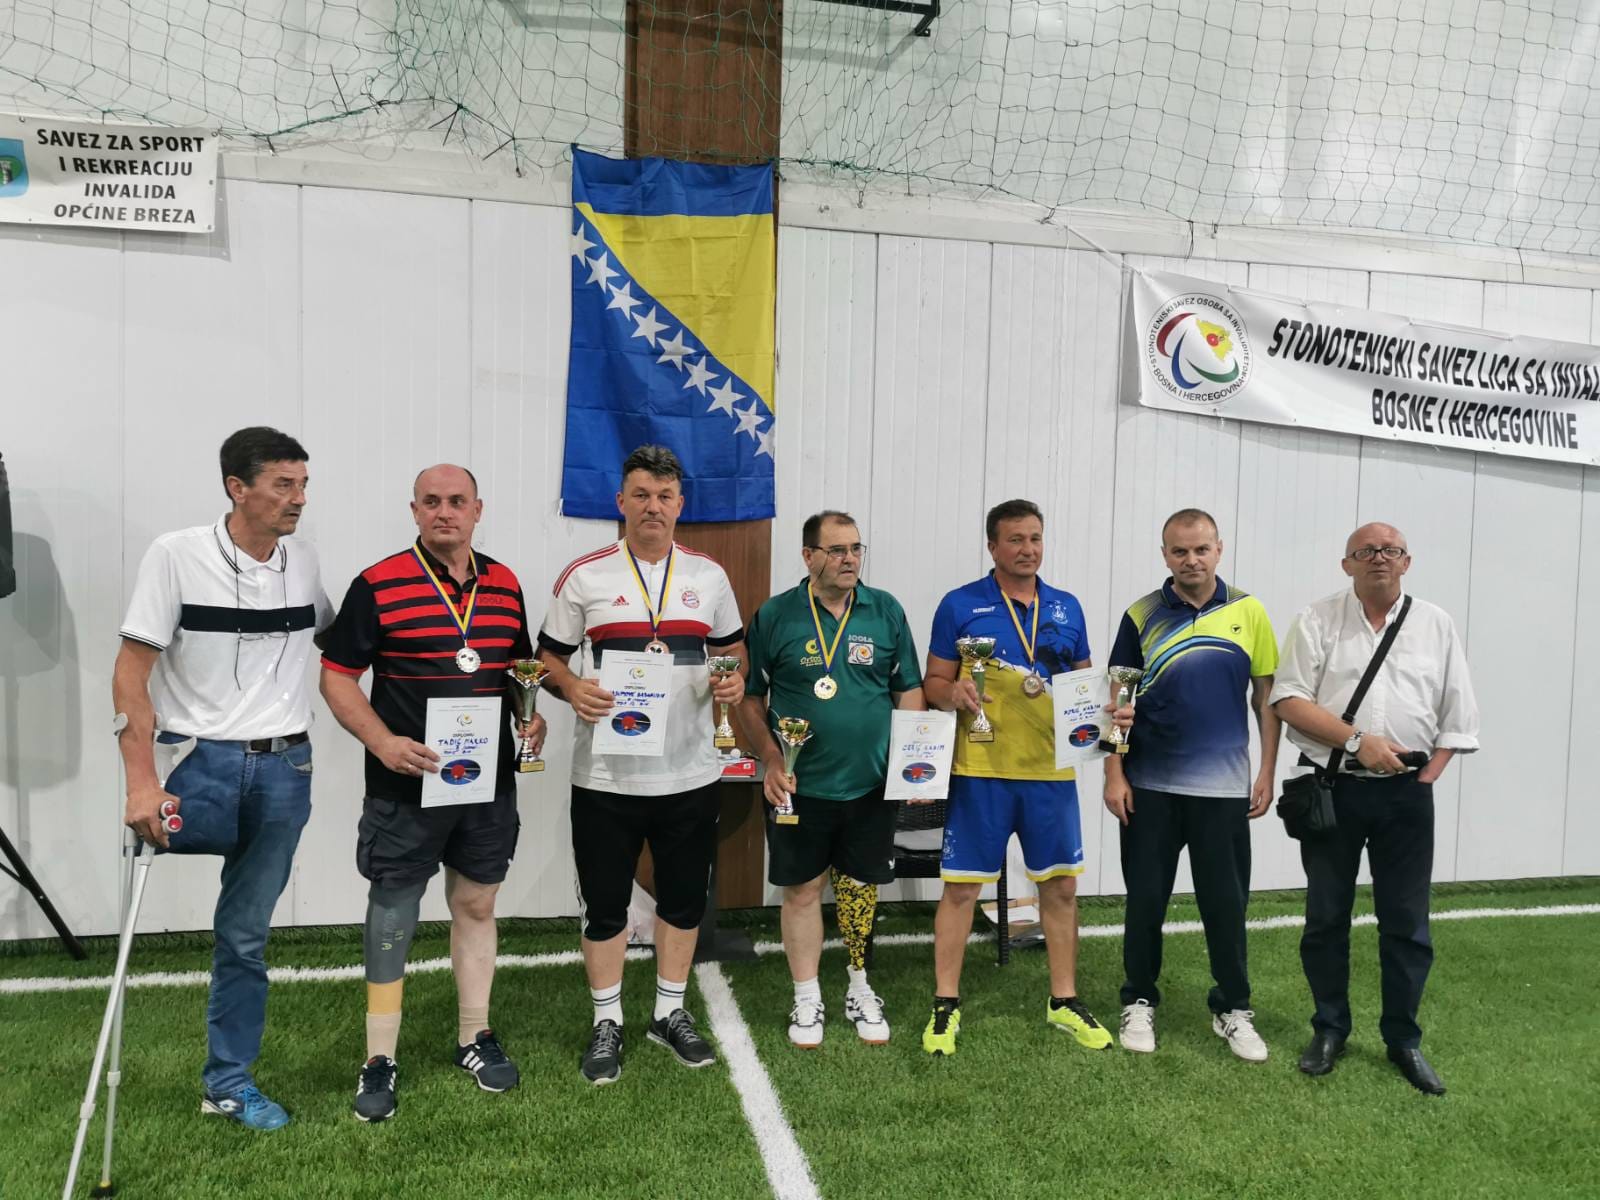 Državno takmičenje u stonom tenisu za osobe sa invaliditetom održano u Brezi